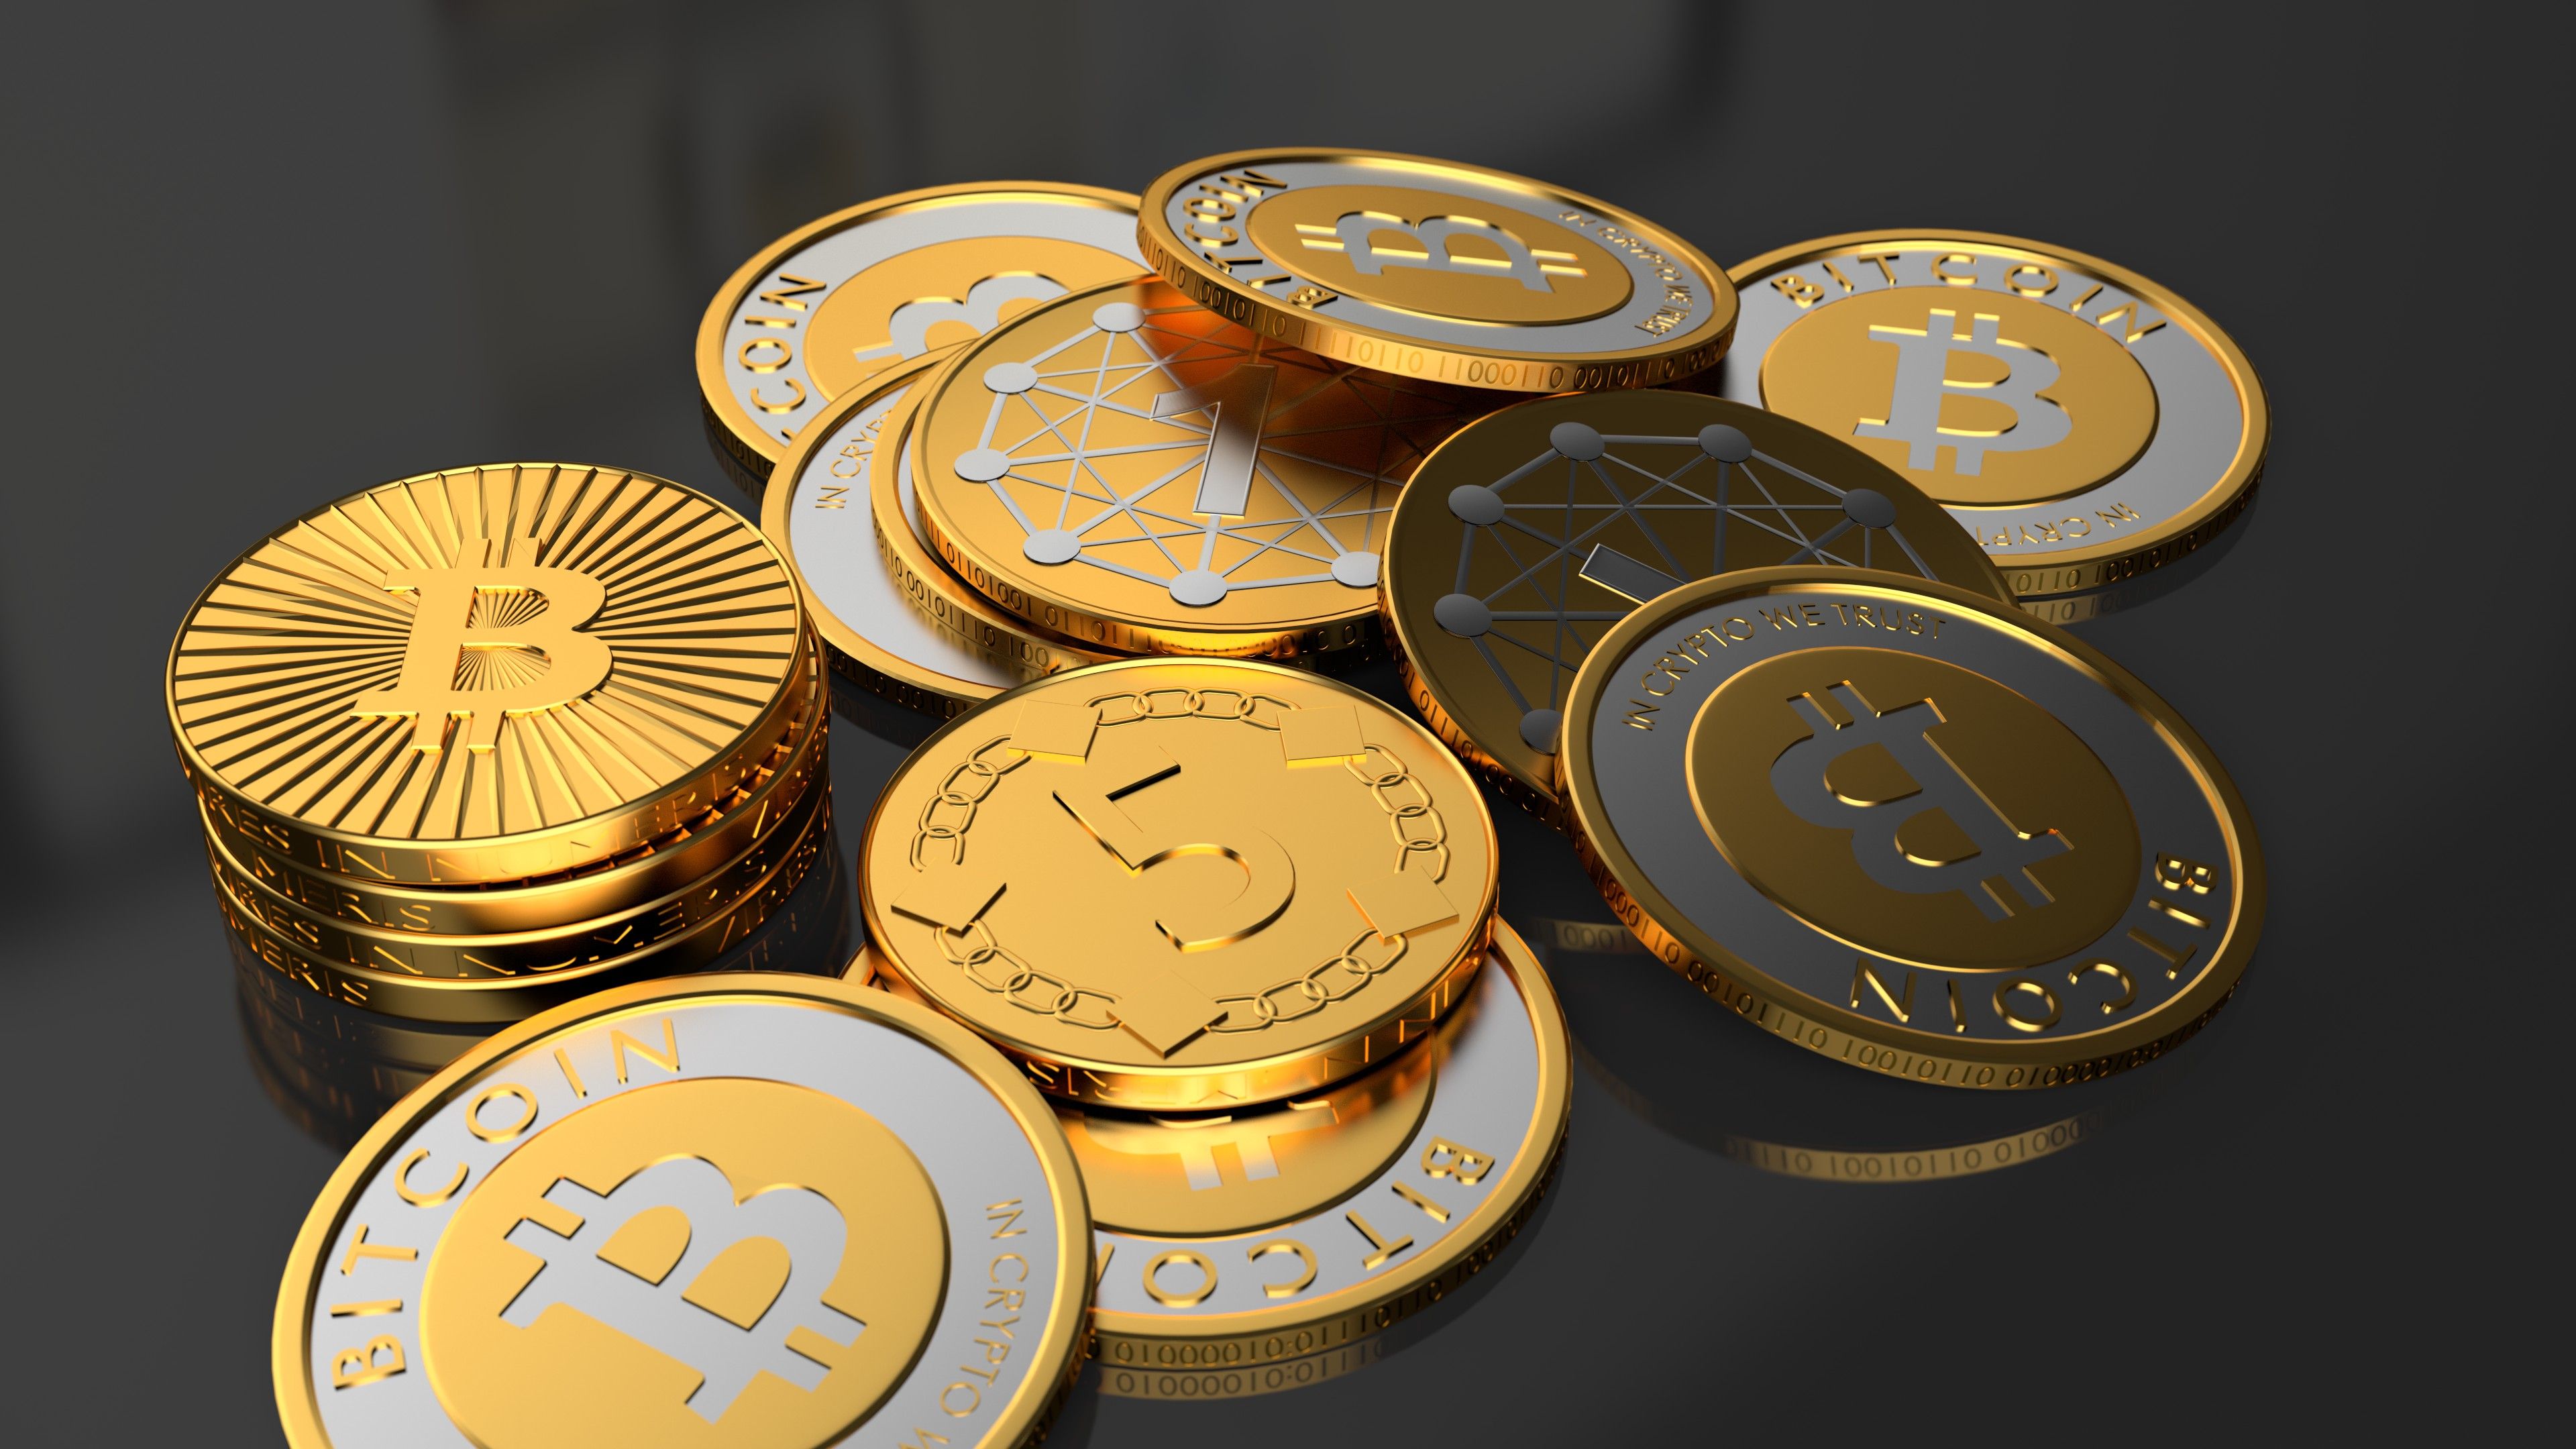 Bitcoin Money Art Wallpapers